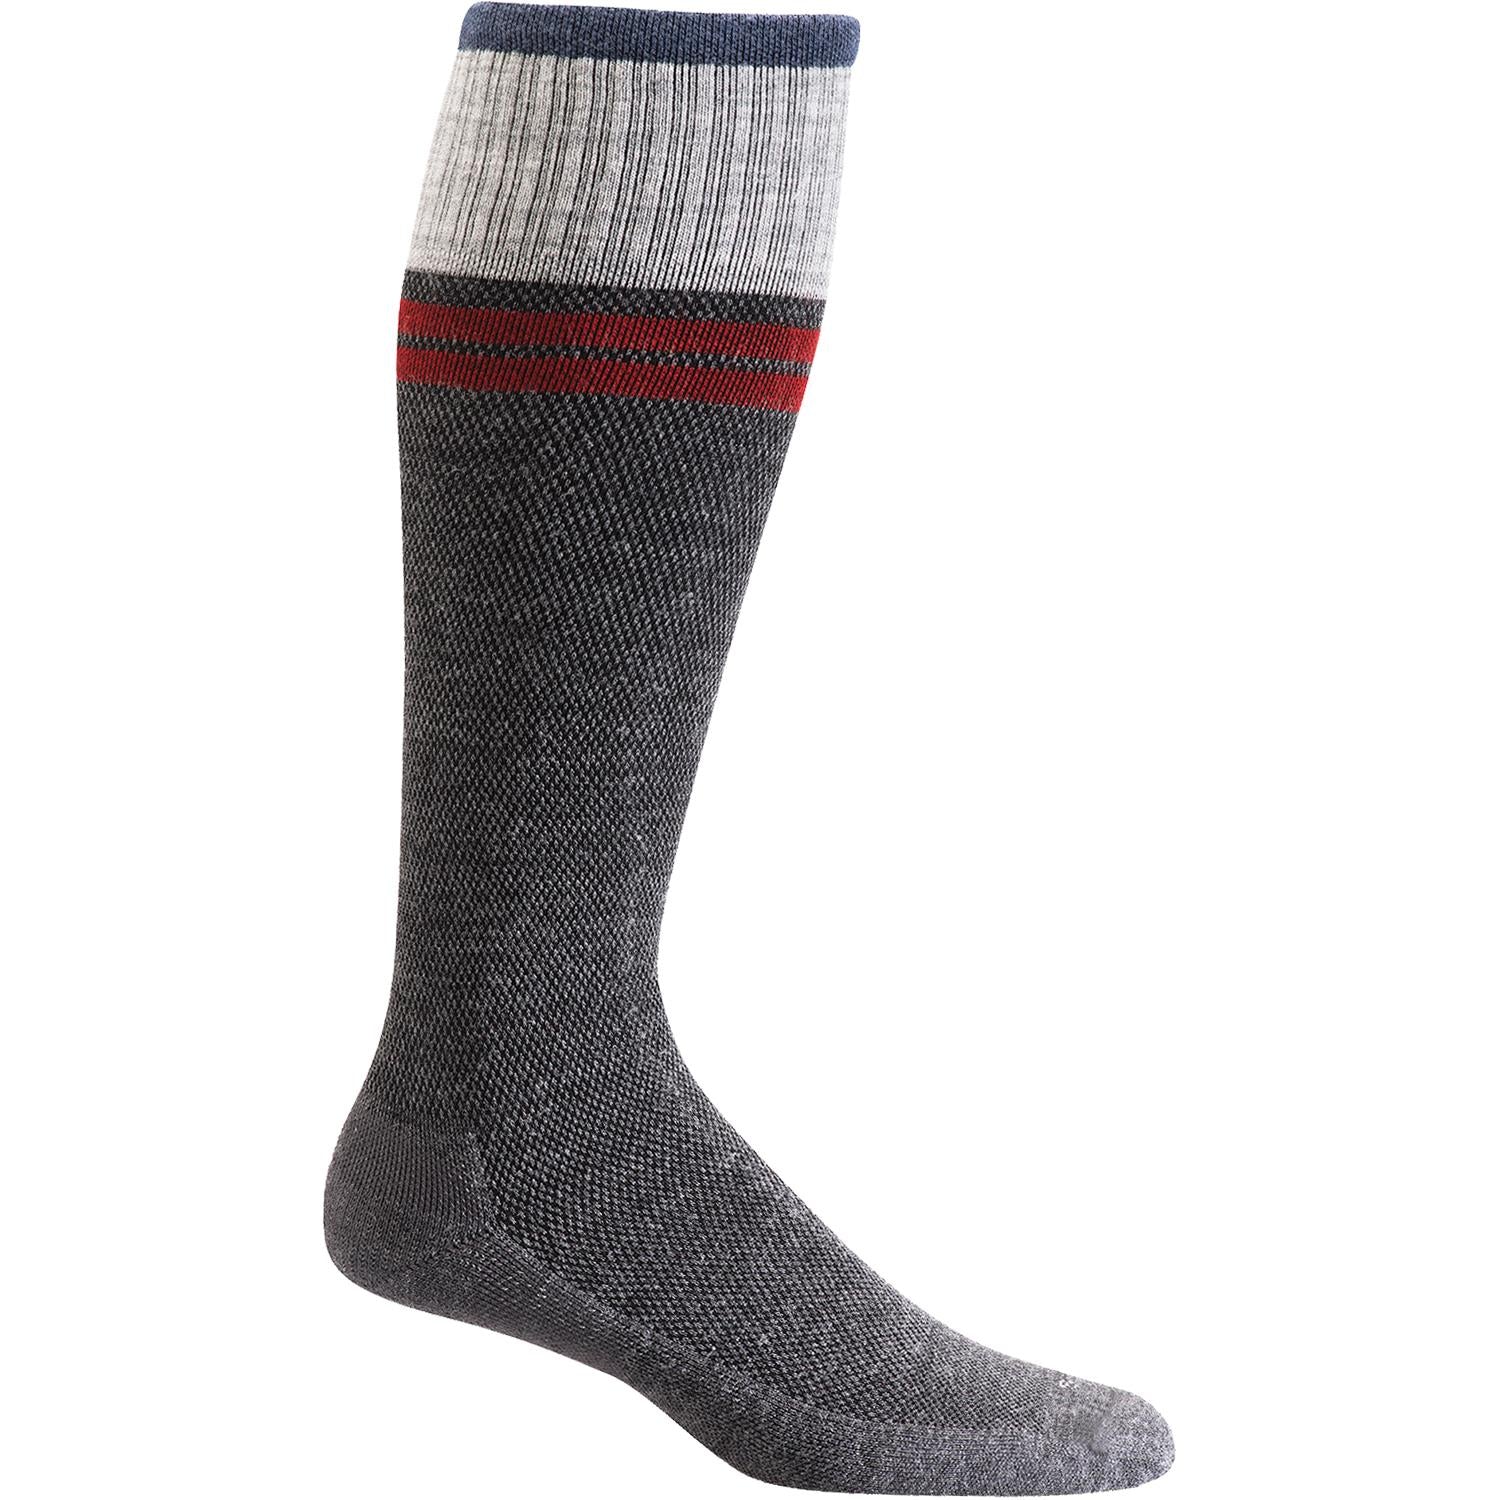 Men's Sockwell Sportster Knee High Socks 15-20 mmHg Charcoal – Footwear ...